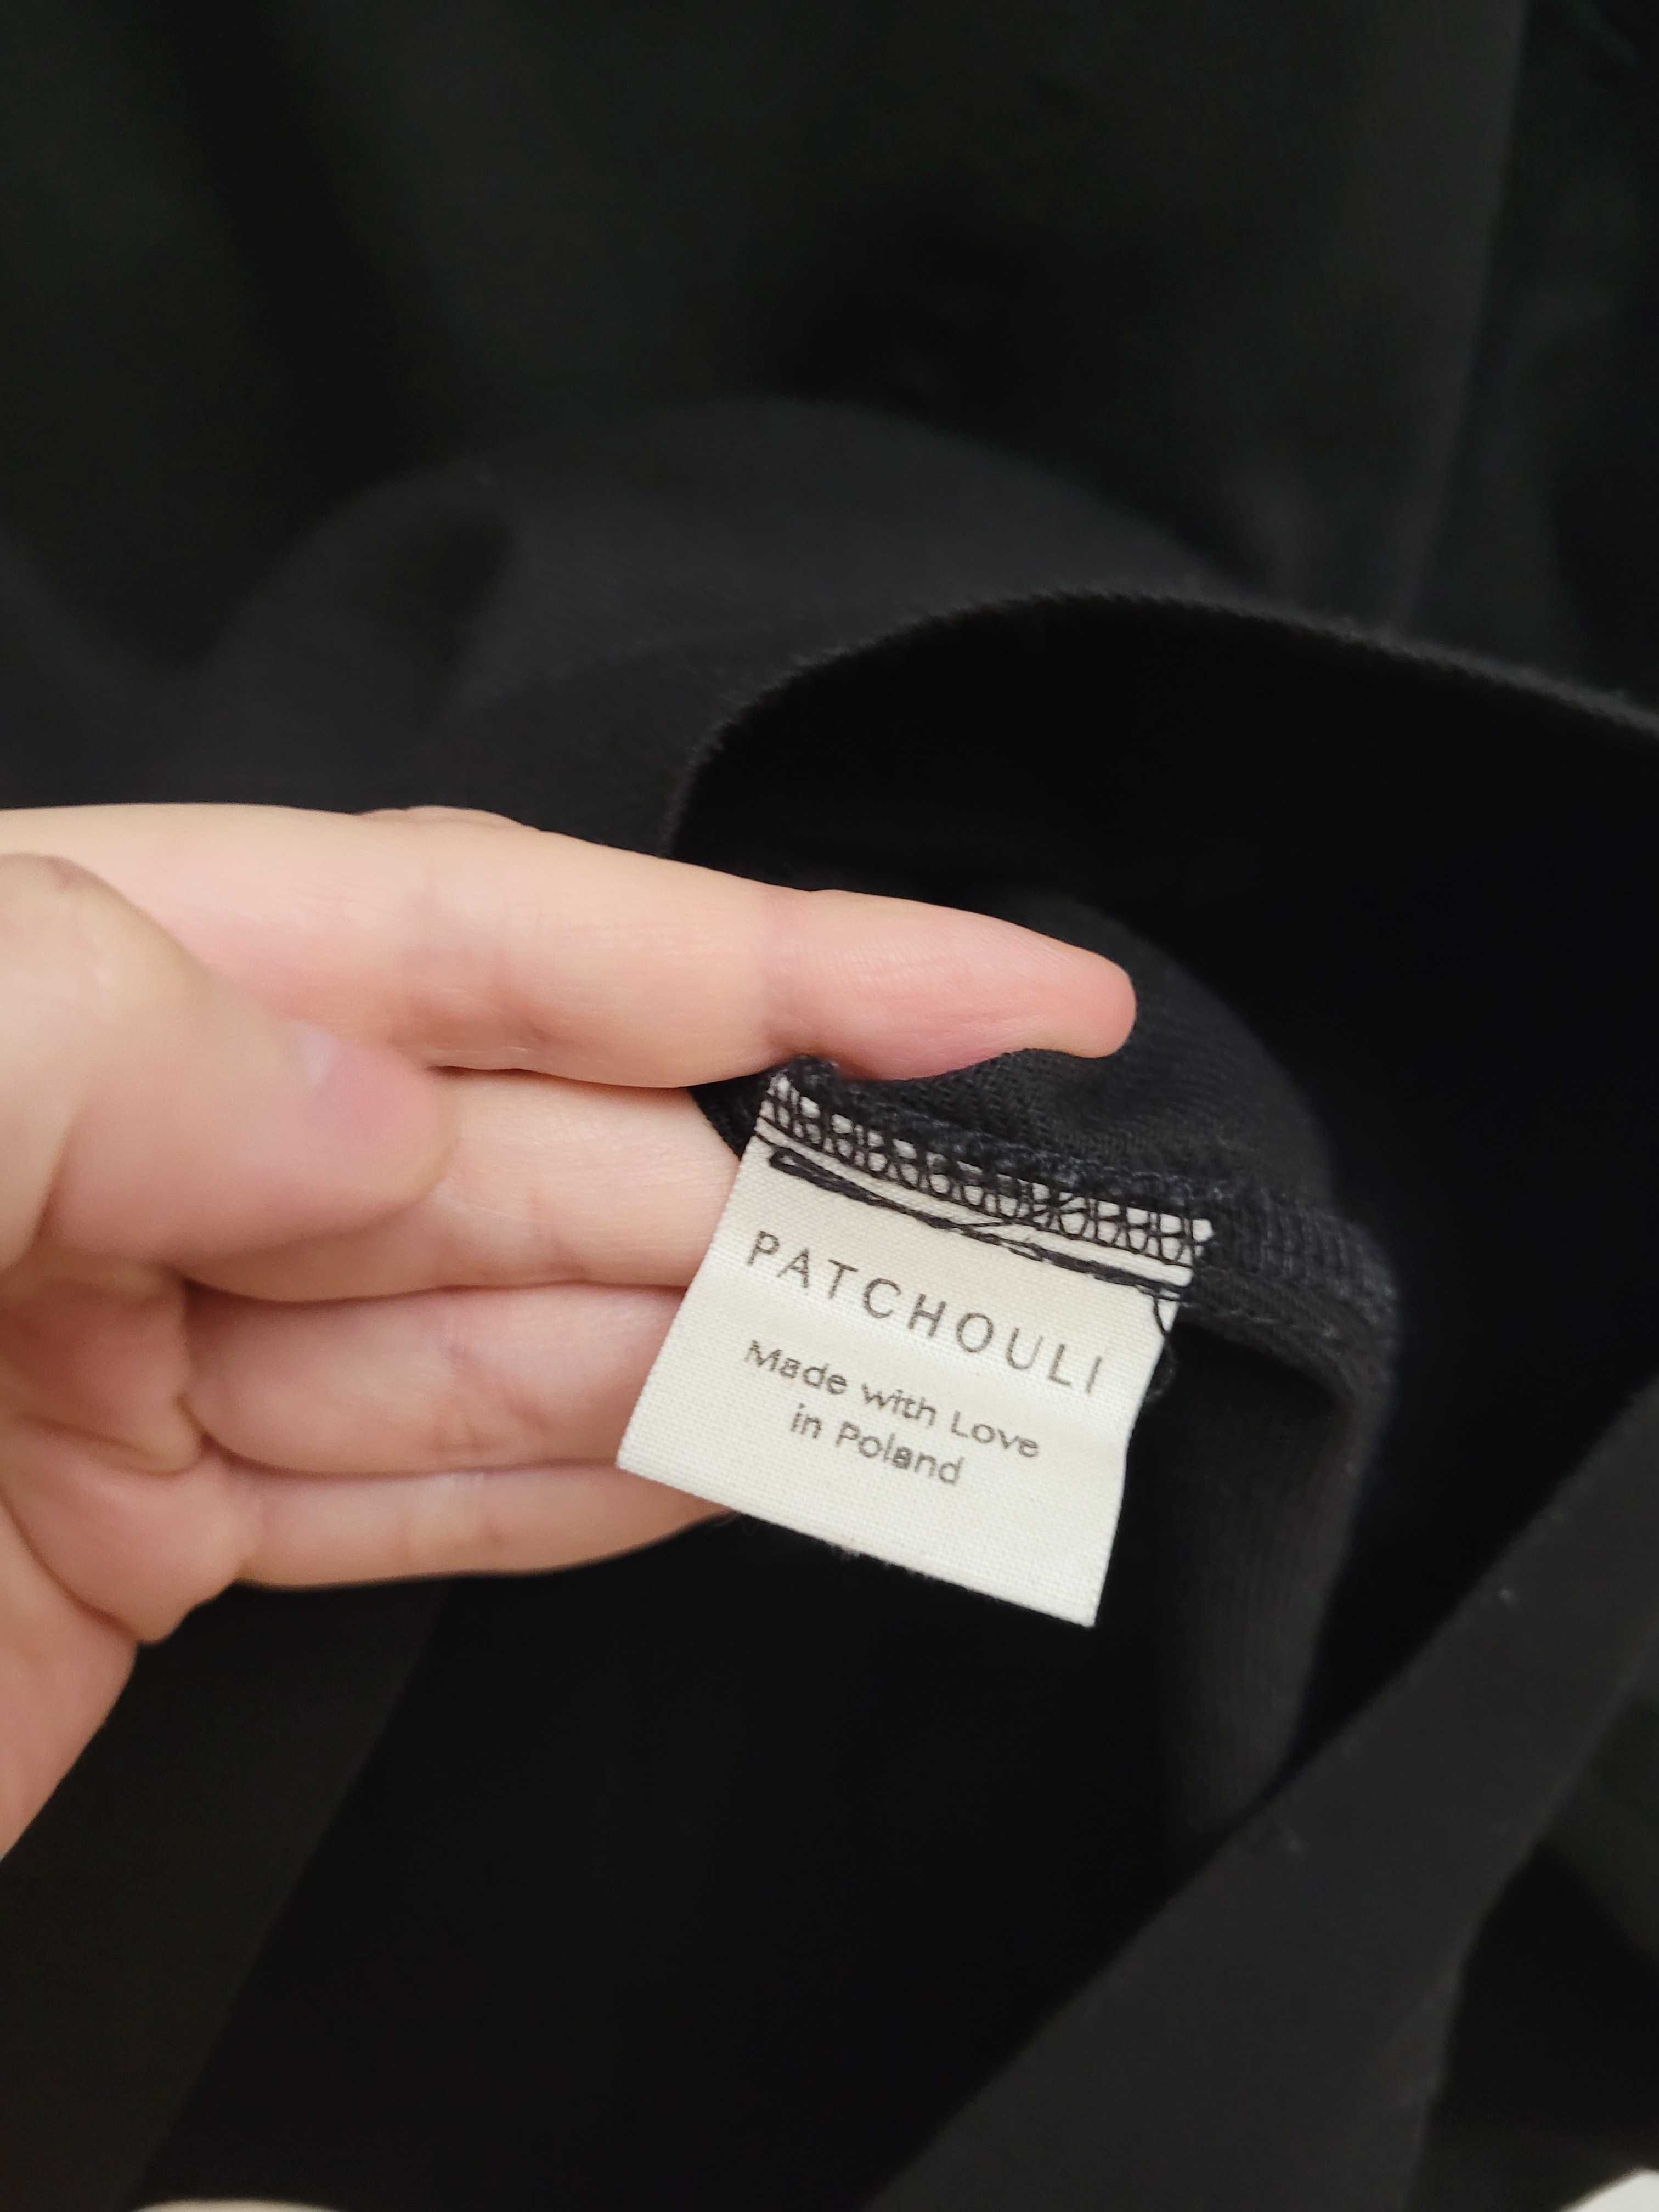 Patchouli kurtka Amazed black czarna S/M bawełna minimalizm klasyka